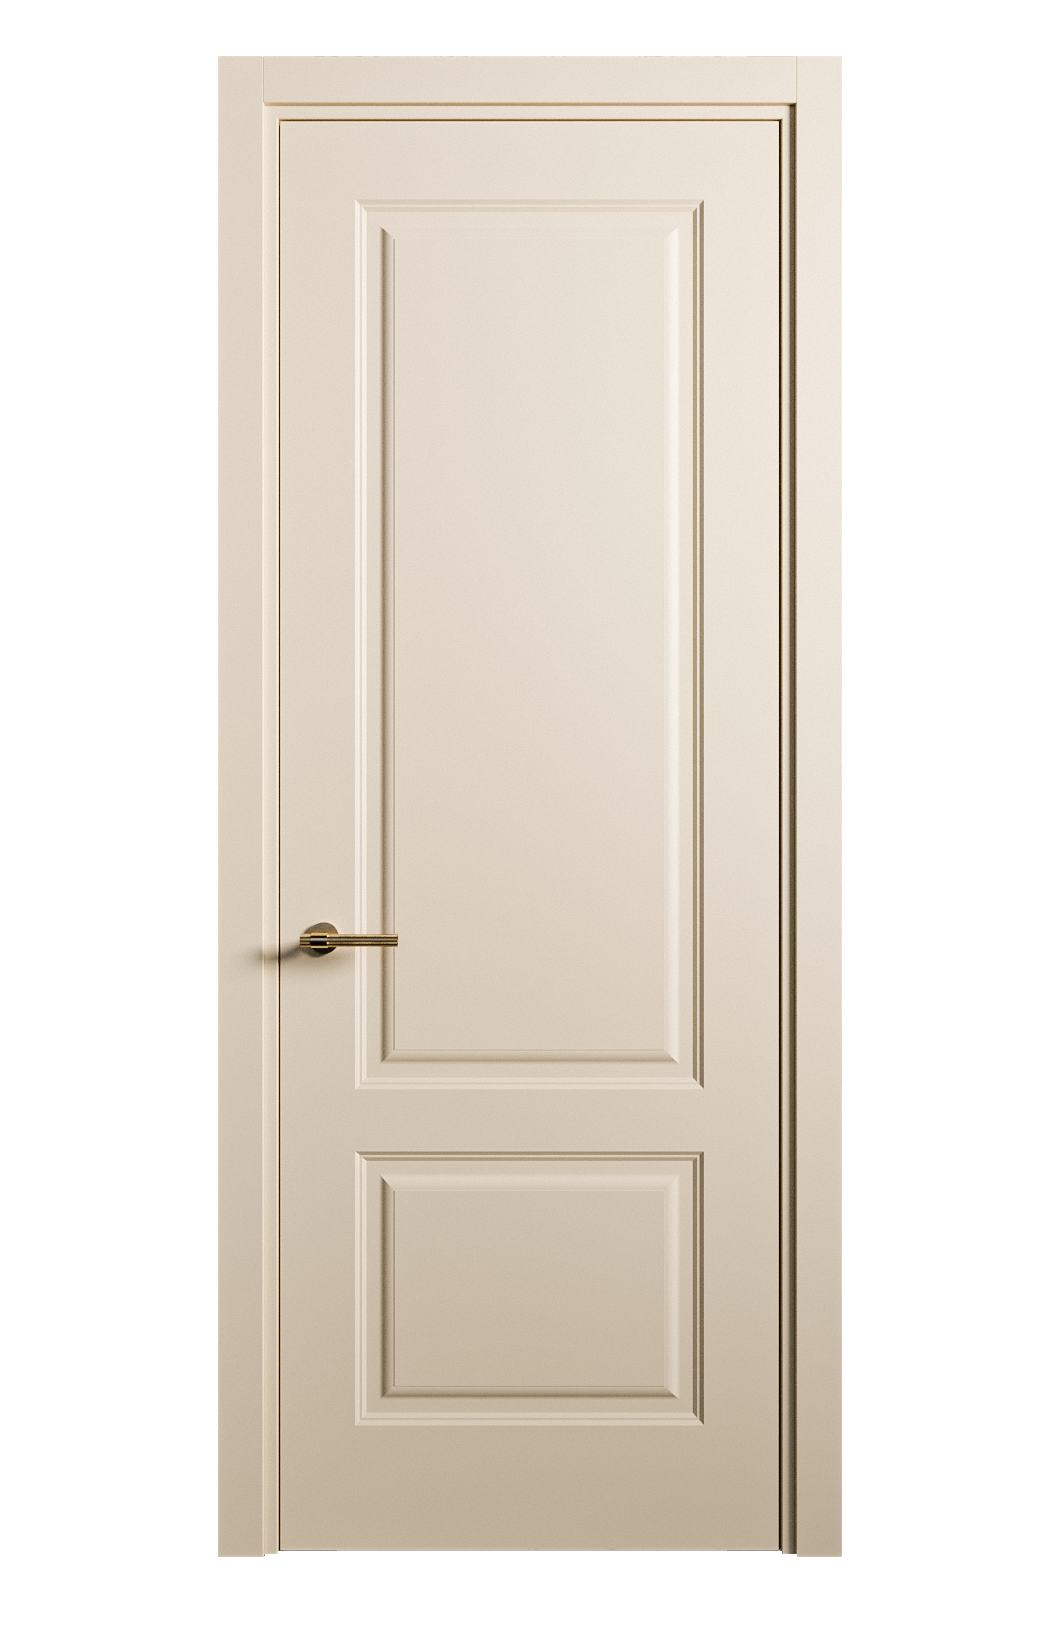 Межкомнатная дверь Вита-1 глухая эмаль ral 1015 26234